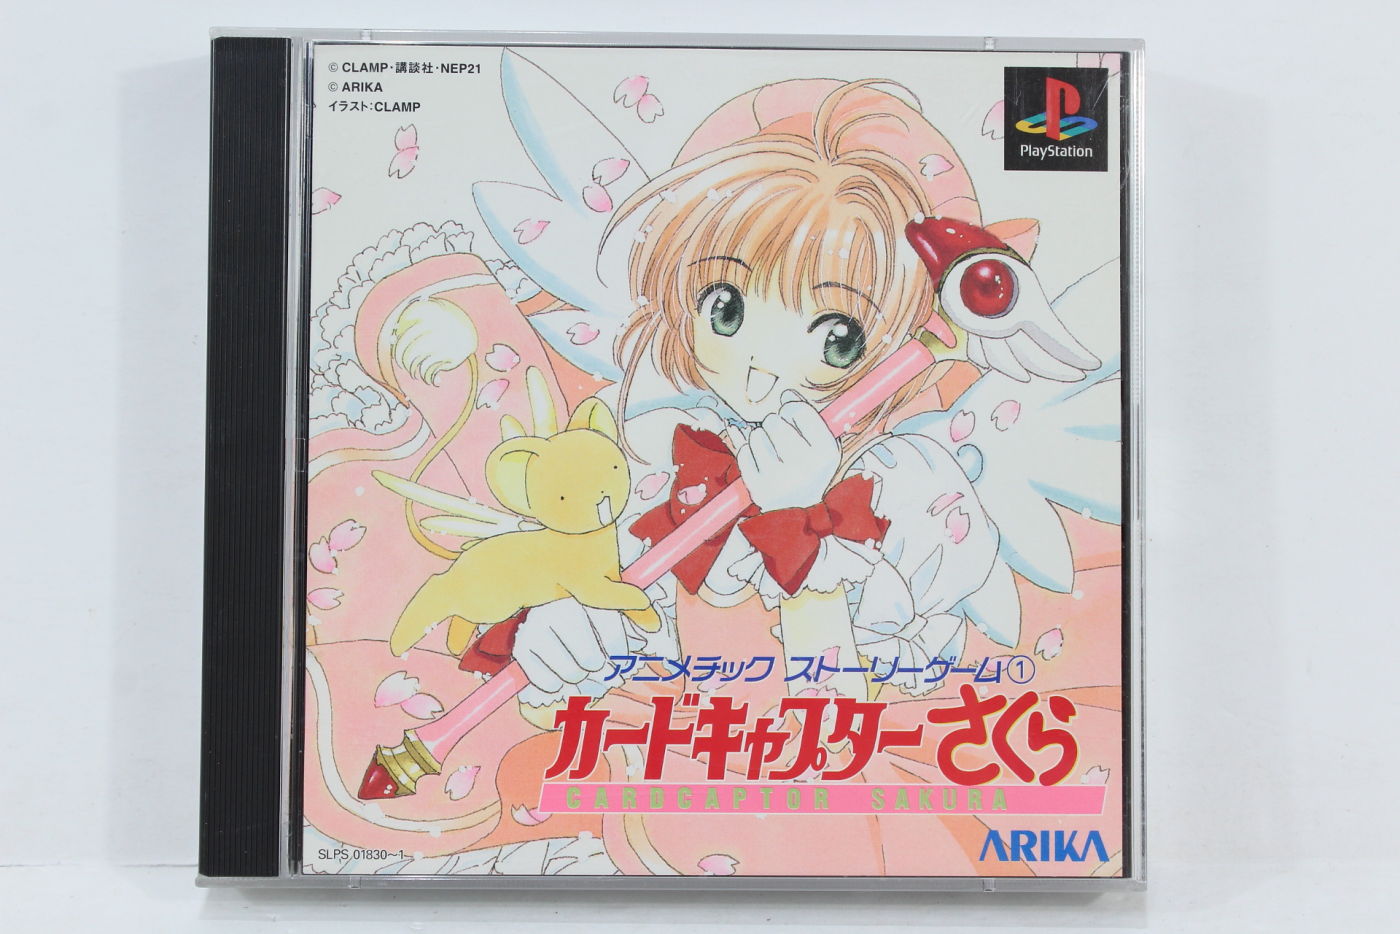 Full Game PSX: Animetic Story Game - Card Captor Sakura 